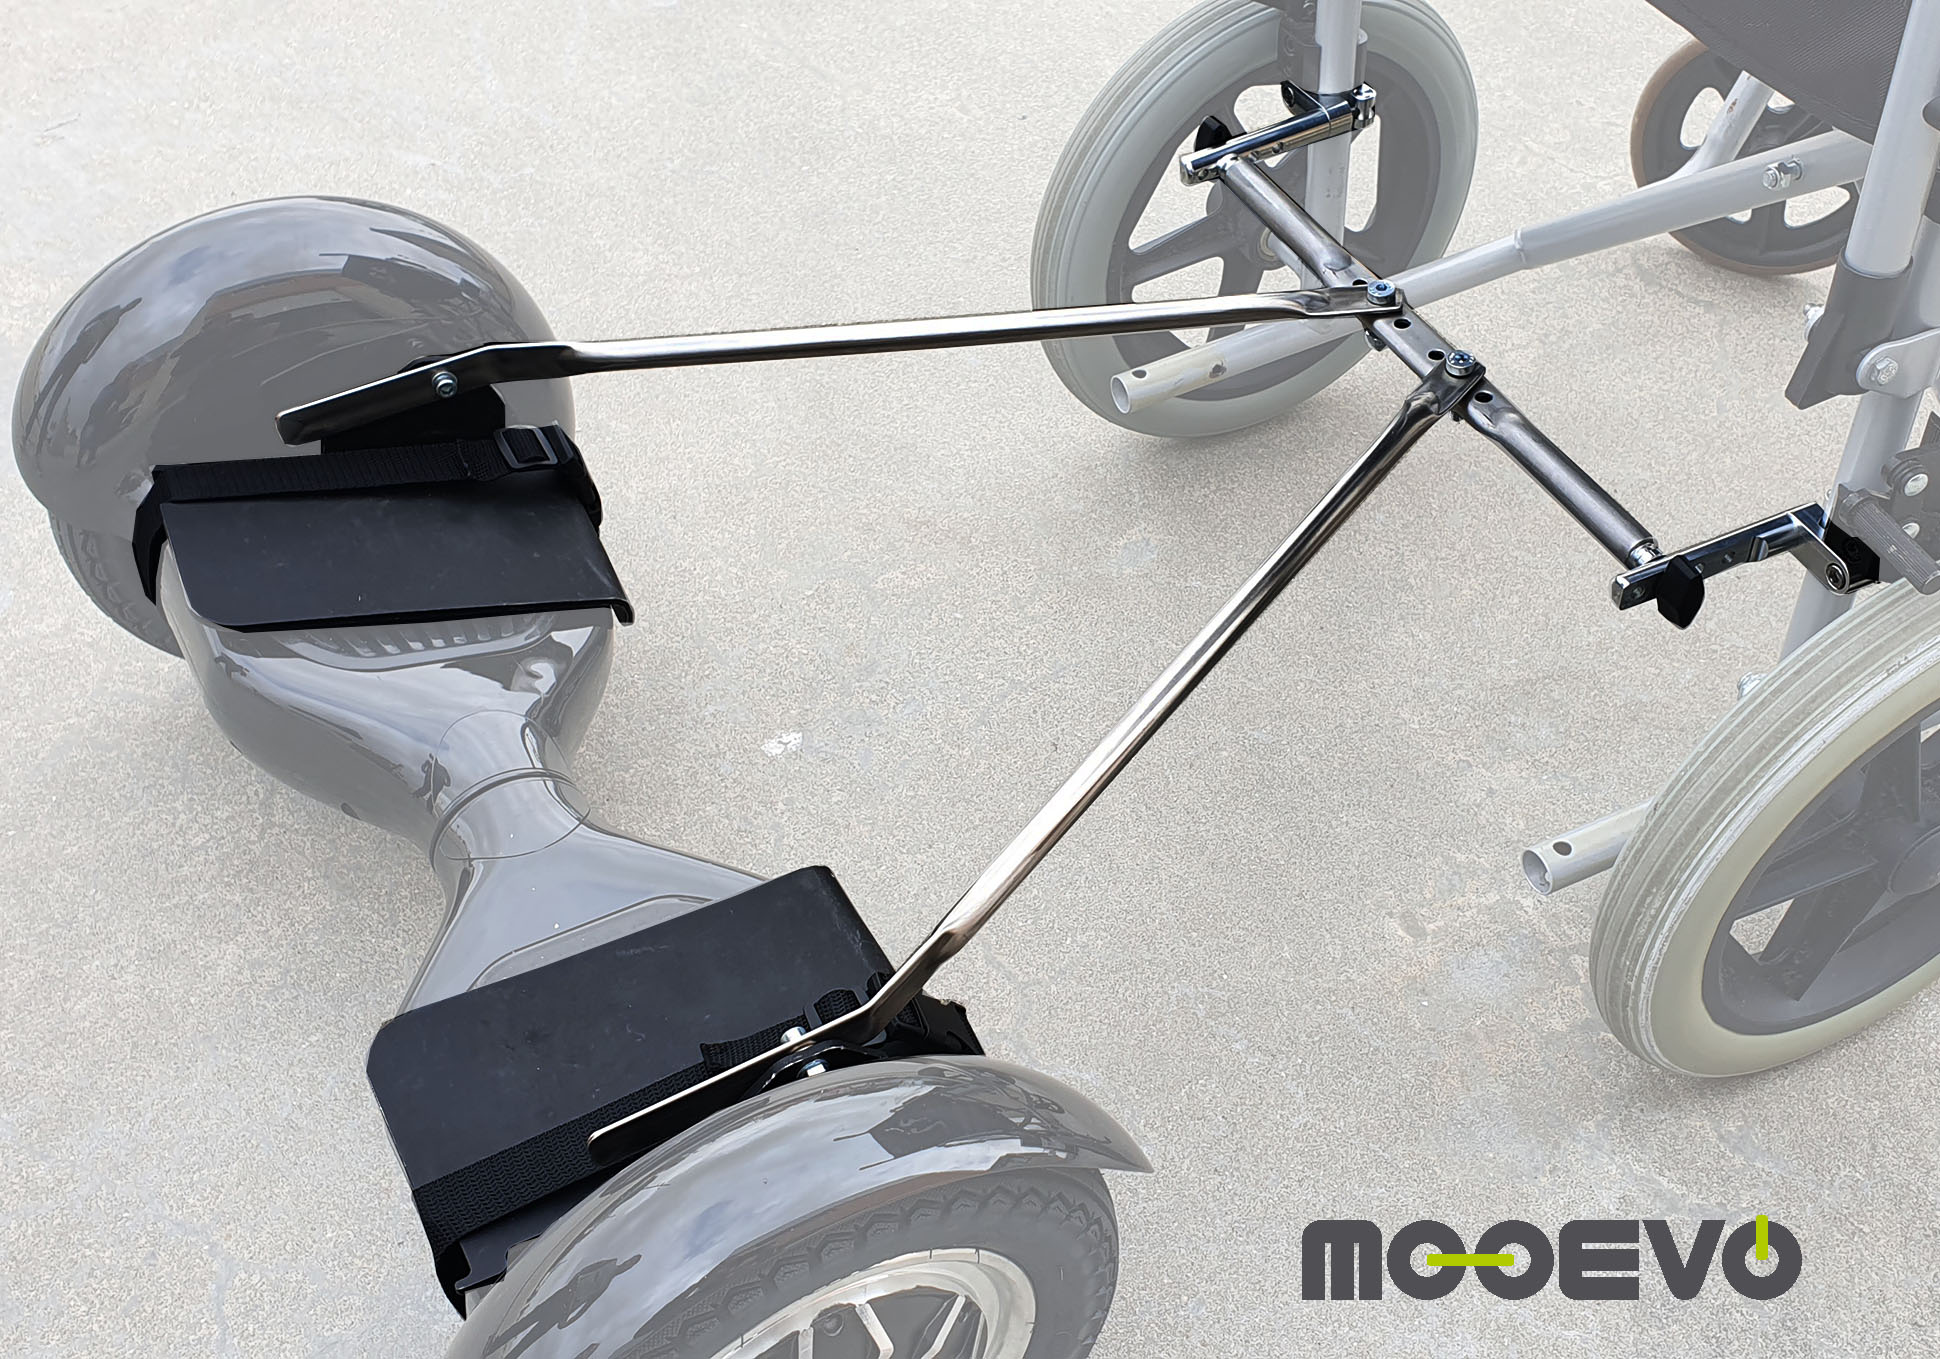 Silla para hoverboard: pasear sillas de ruedas con hoverboards - AidWheels